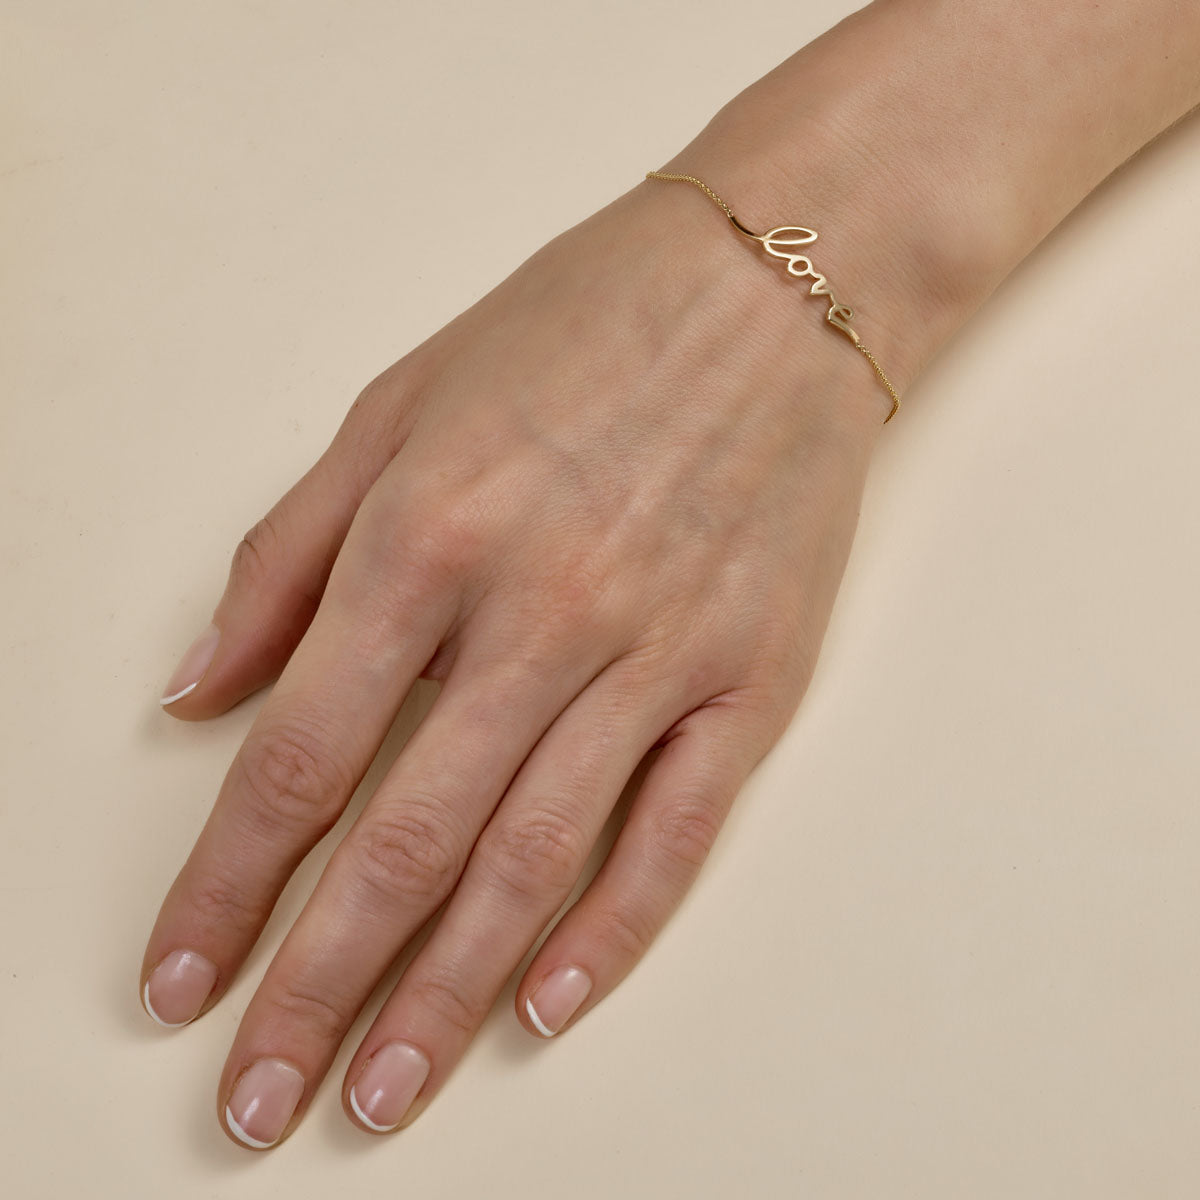 cursive gold love bracelet on womans wrist